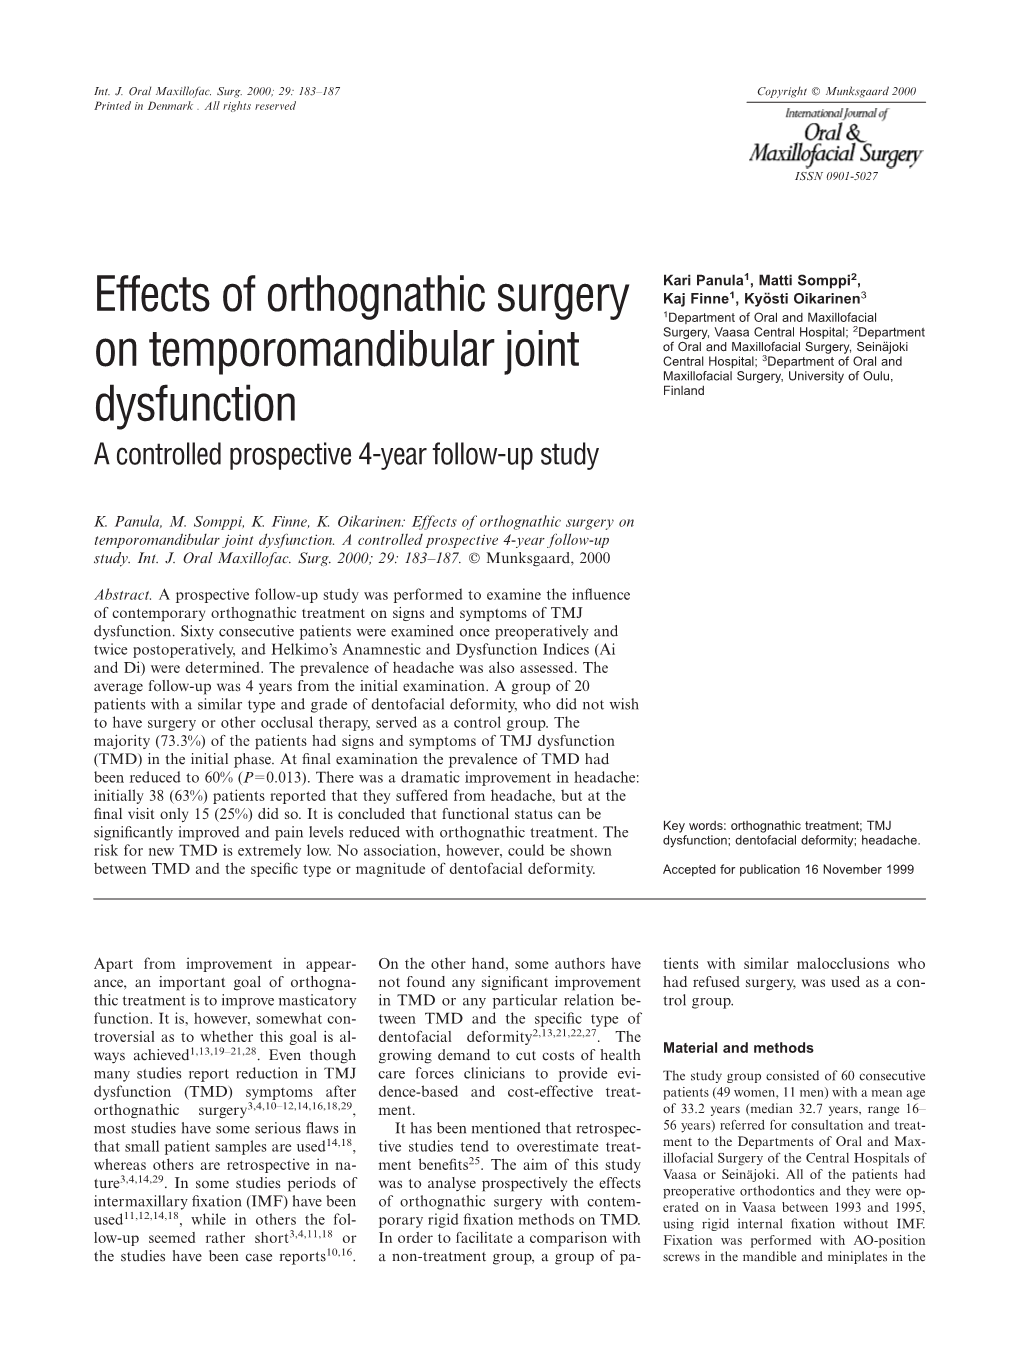 Effects of Orthognathic Surgery on Temporomandibular Joint Dysfunction